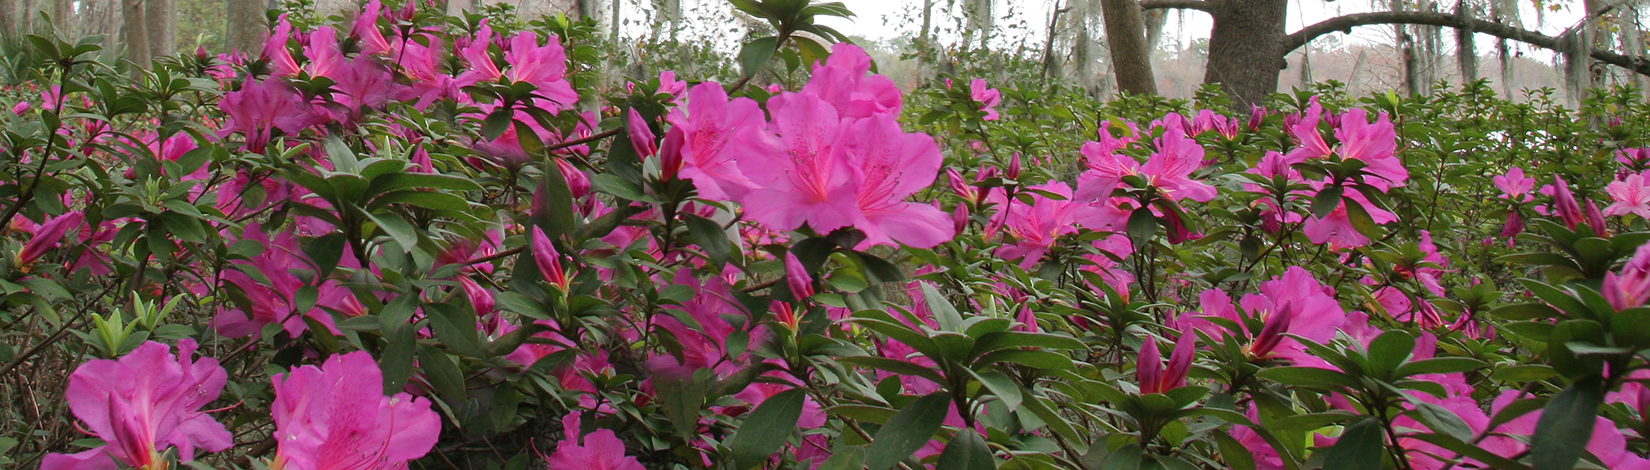 azalea's in bloom